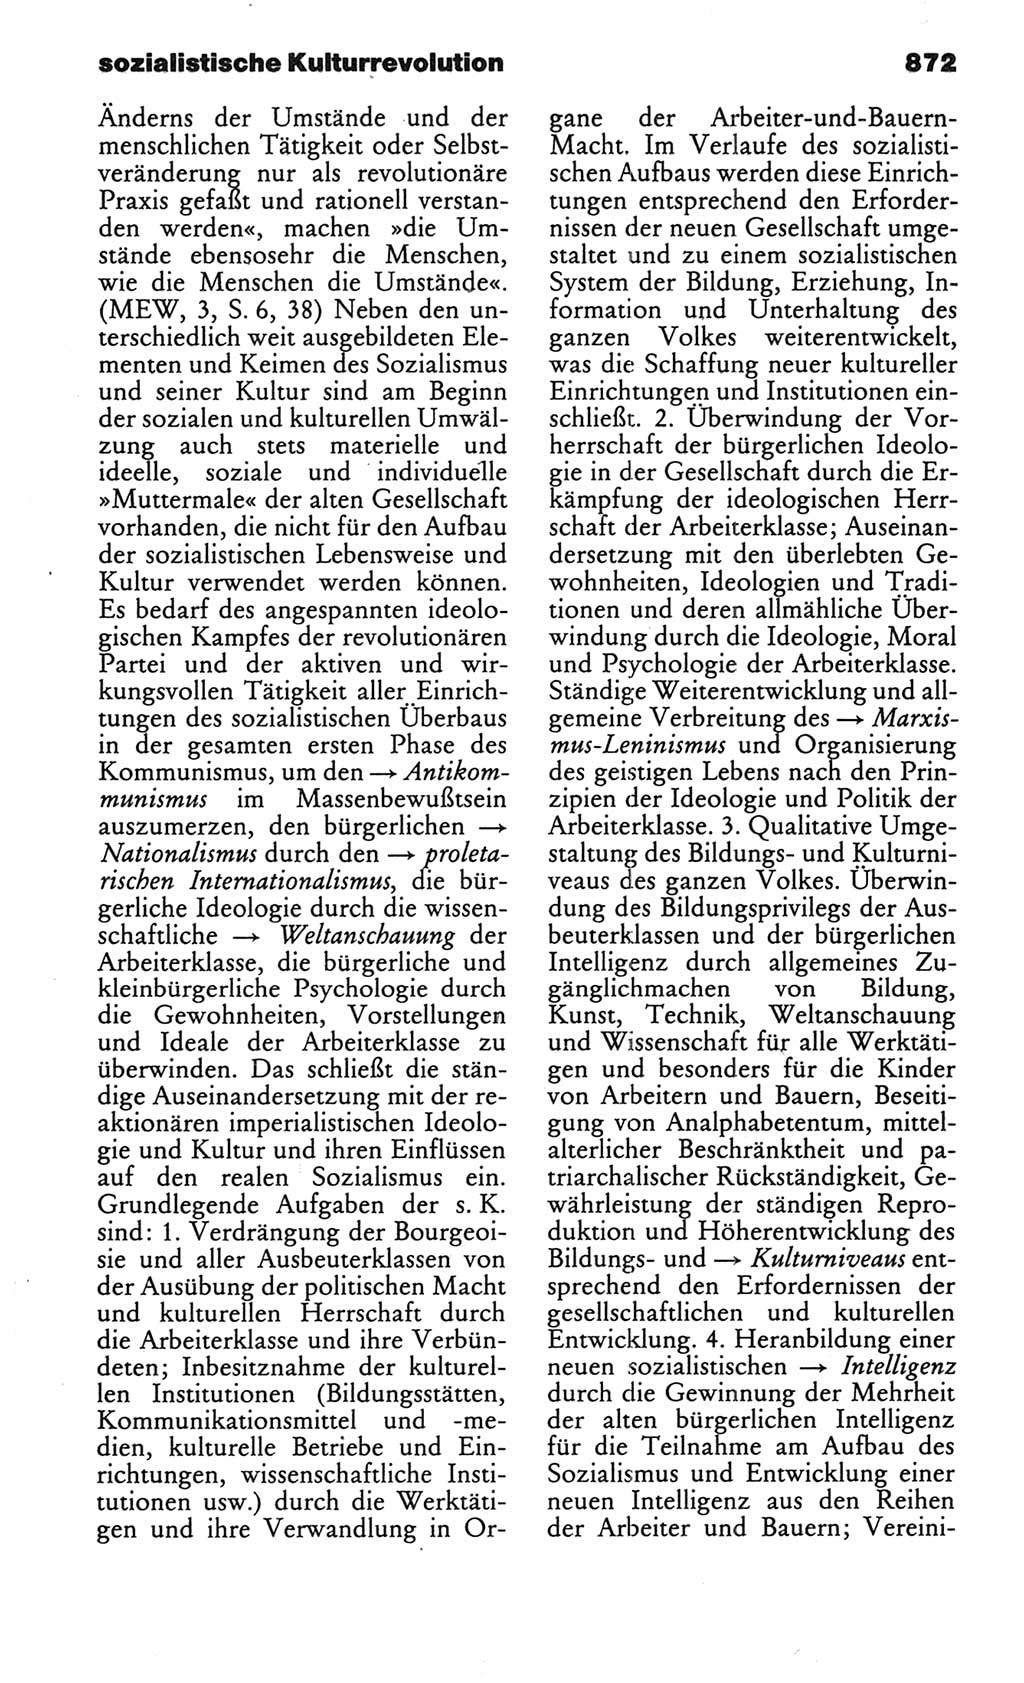 Kleines politisches Wörterbuch [Deutsche Demokratische Republik (DDR)] 1986, Seite 872 (Kl. pol. Wb. DDR 1986, S. 872)